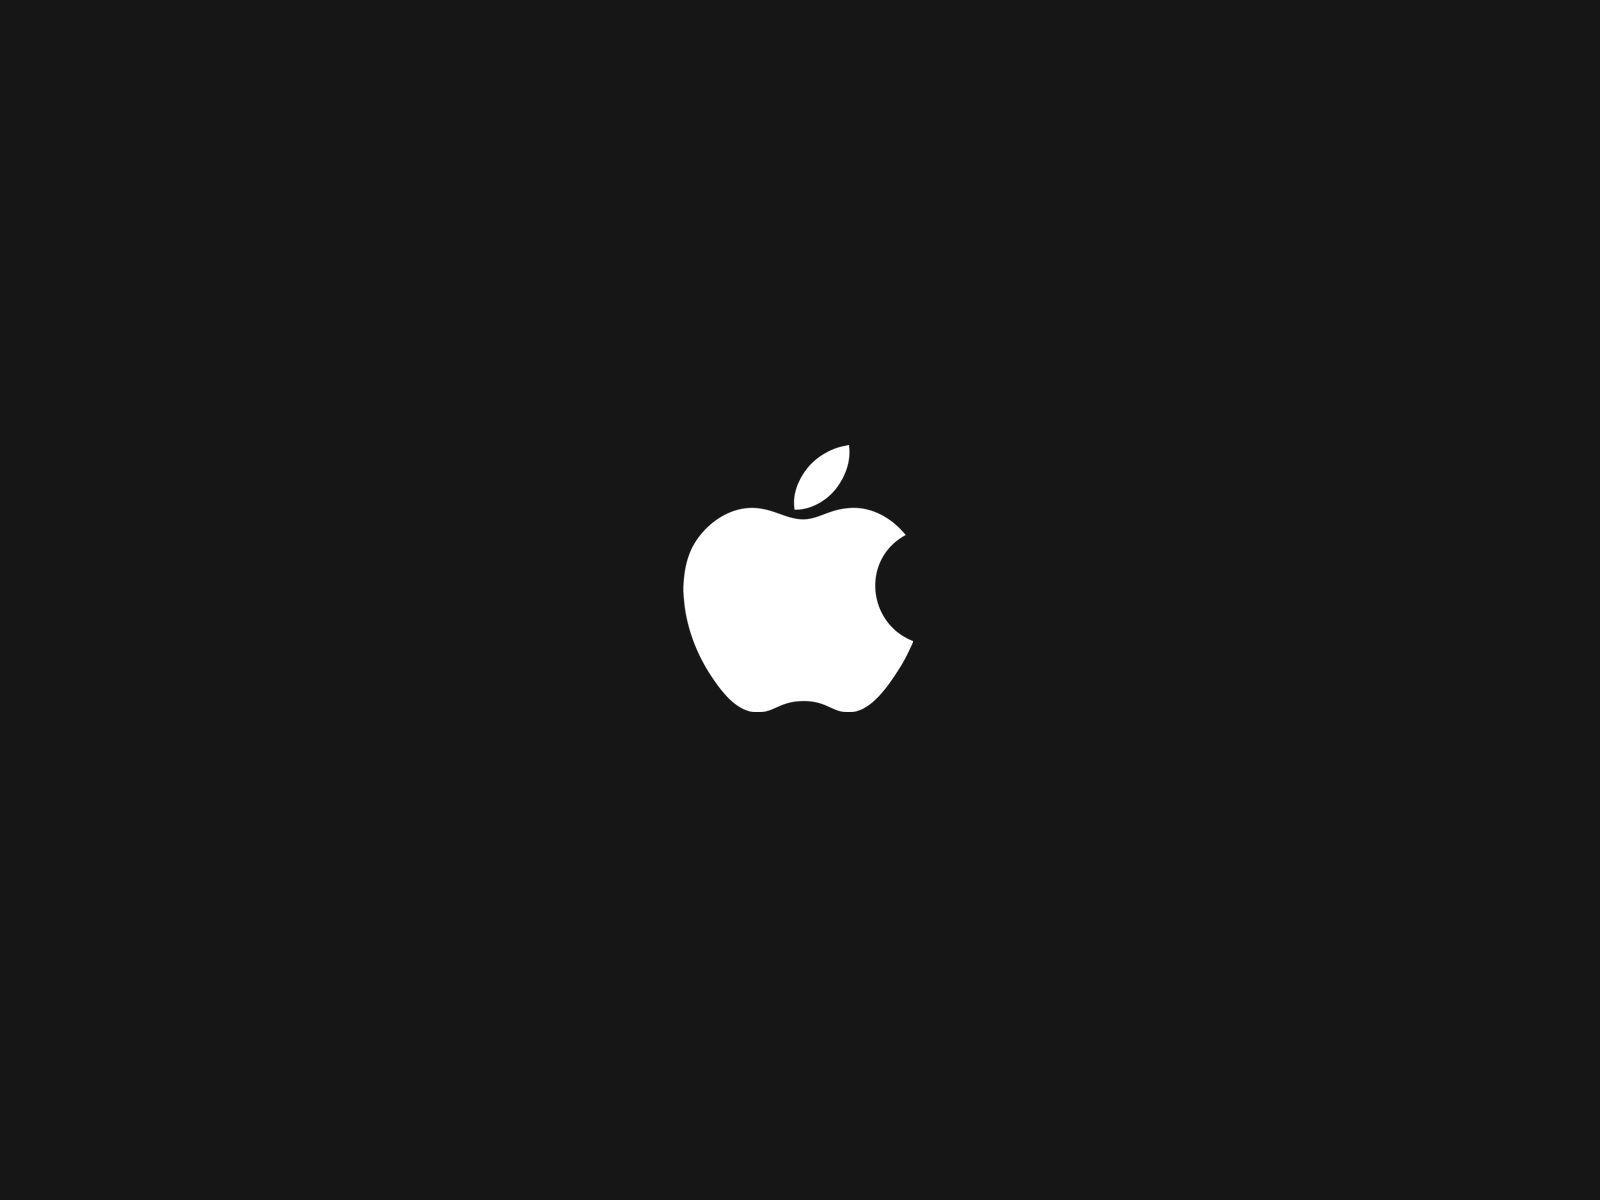 Apple Logo Backgrounds High Resolution Image Desktop Backgrounds Free